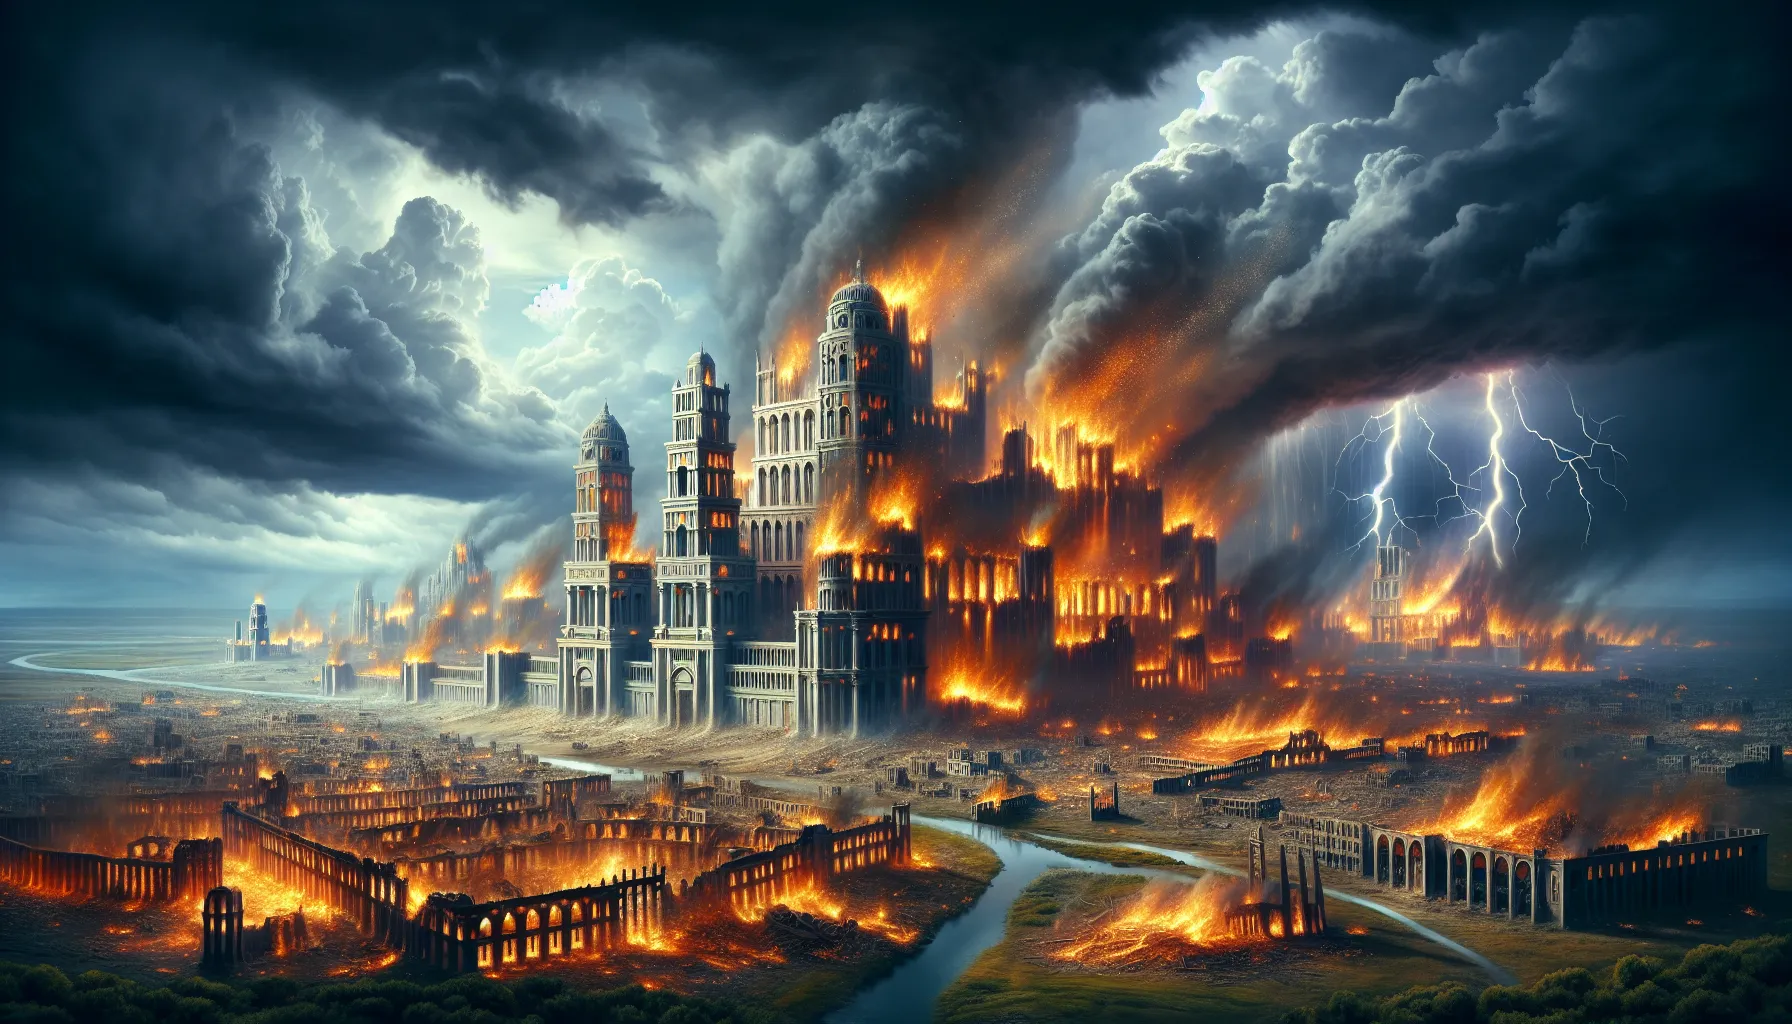 Representación artística de la destrucción de Sodoma y Gomorra por la ira divina.